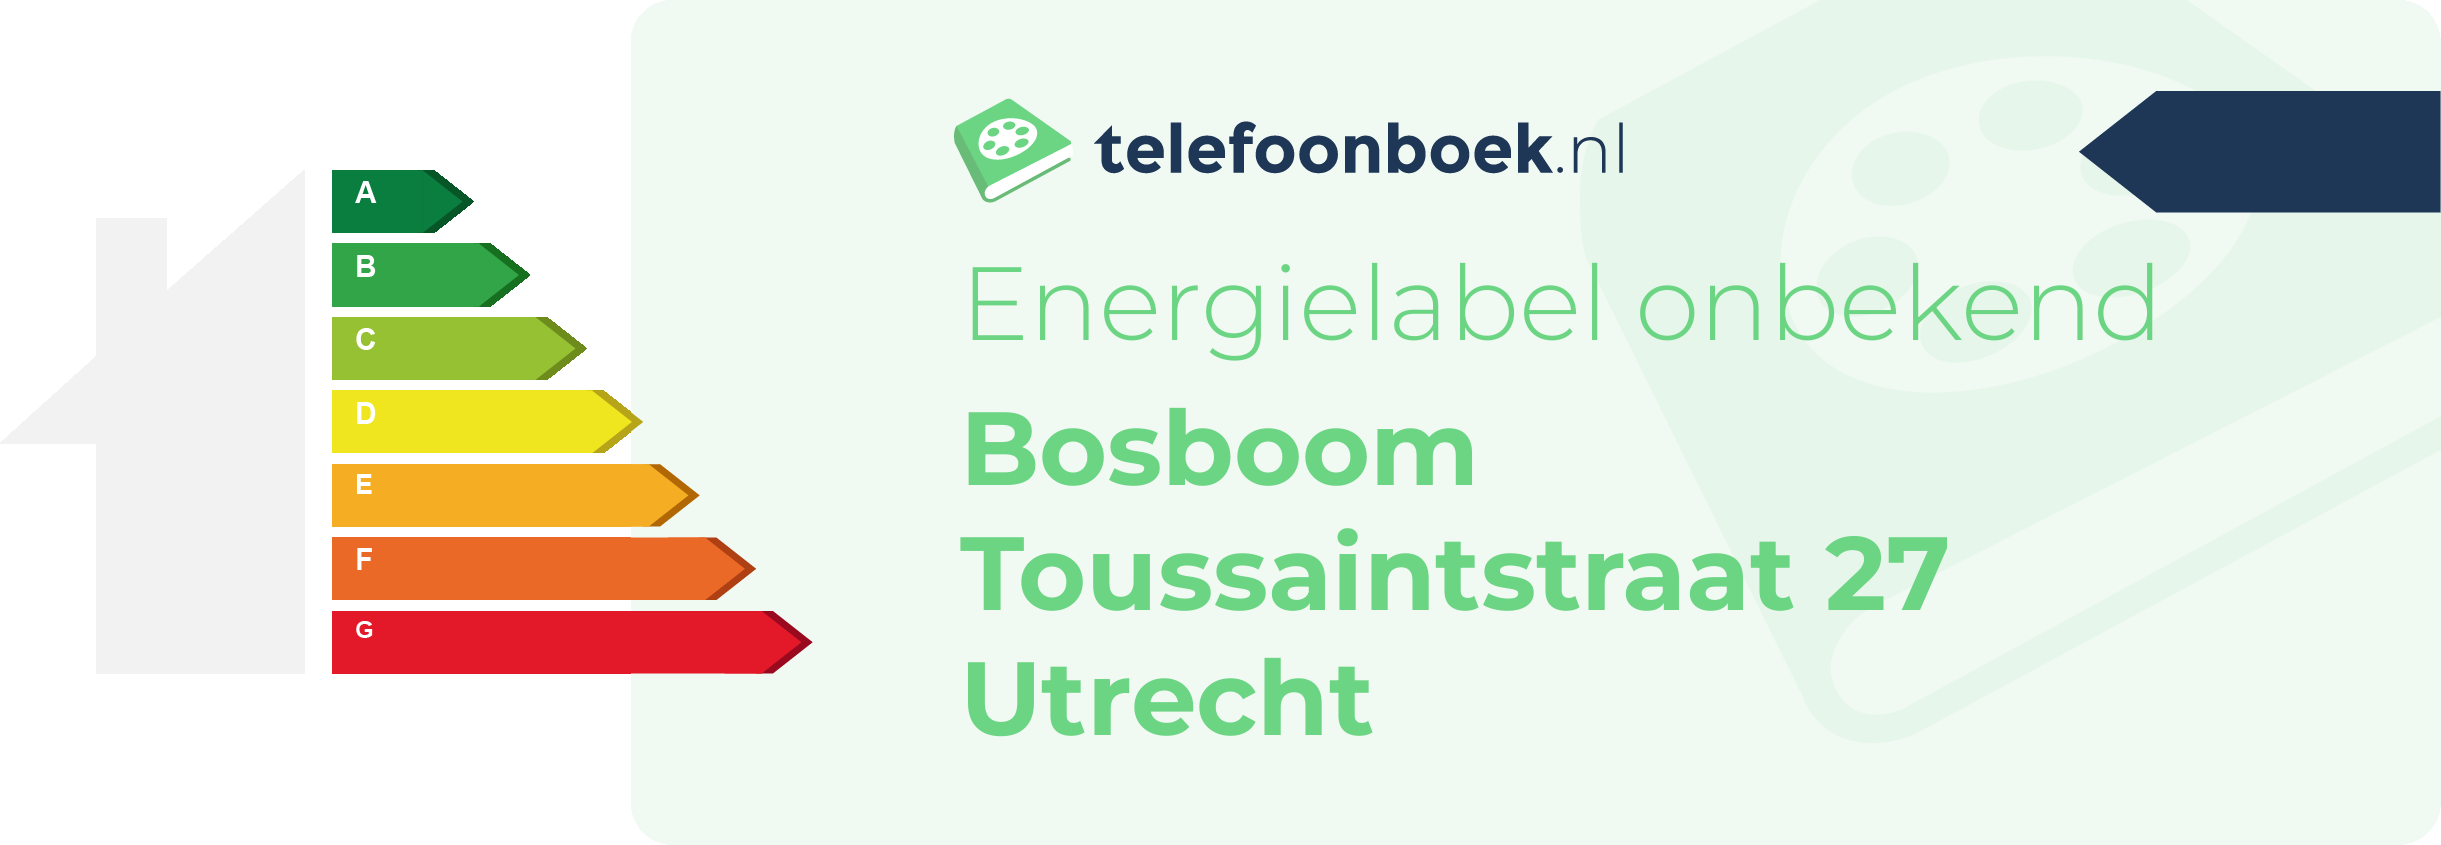 Energielabel Bosboom Toussaintstraat 27 Utrecht